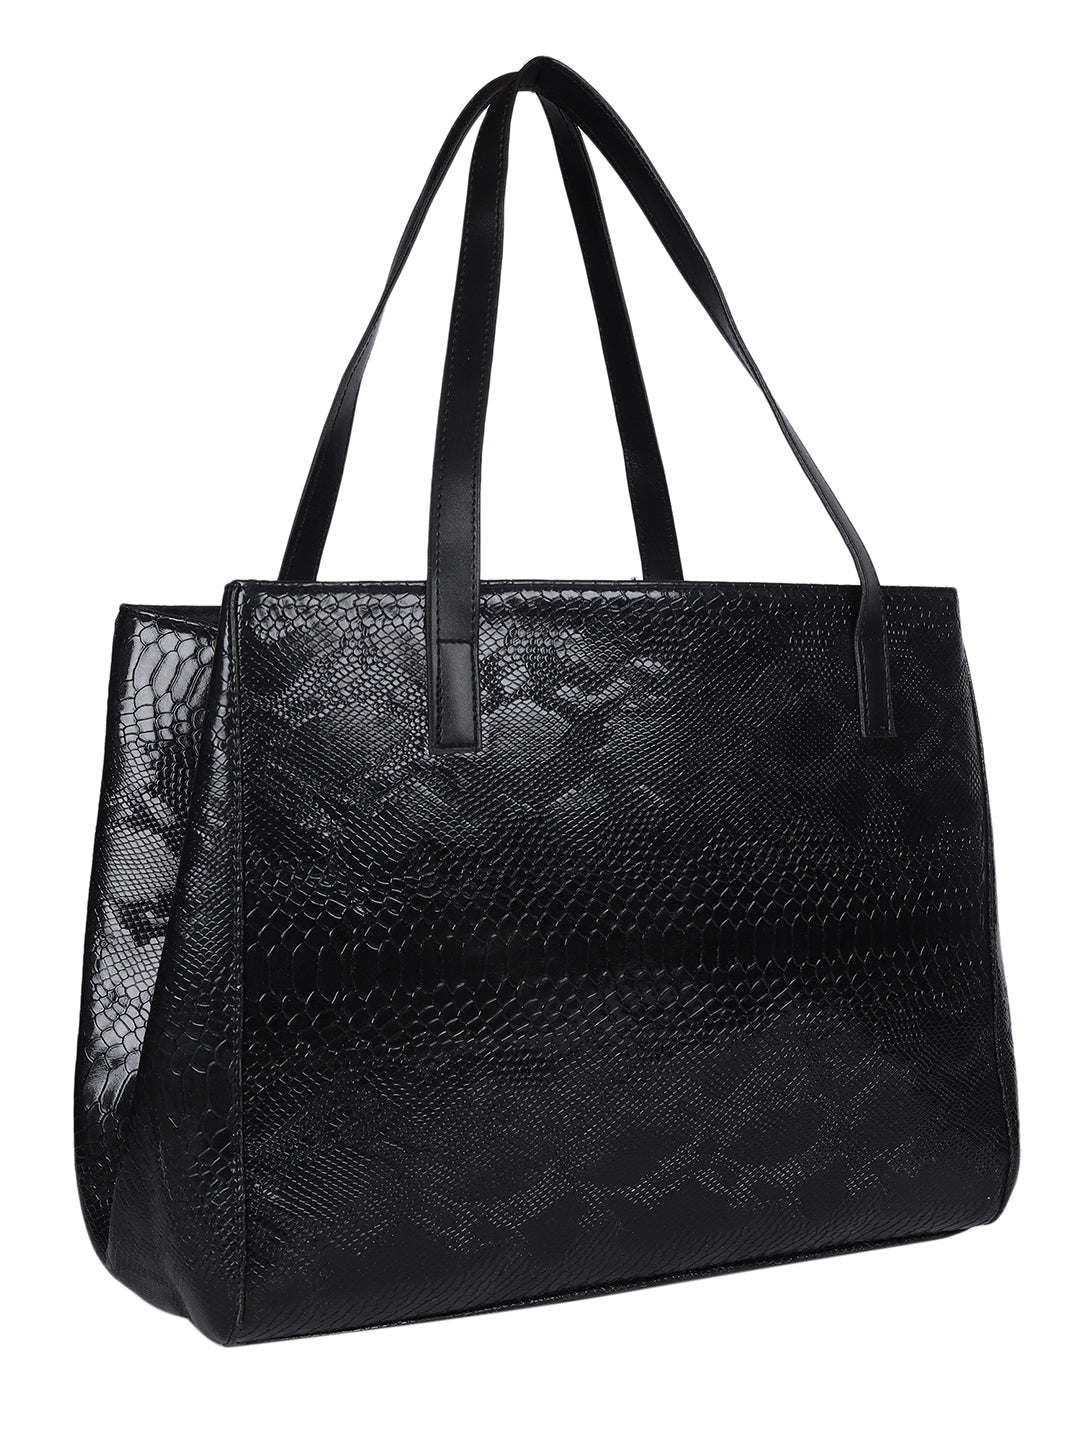 MINI WESST Black Textured Tote Bag(MWTB103BL)